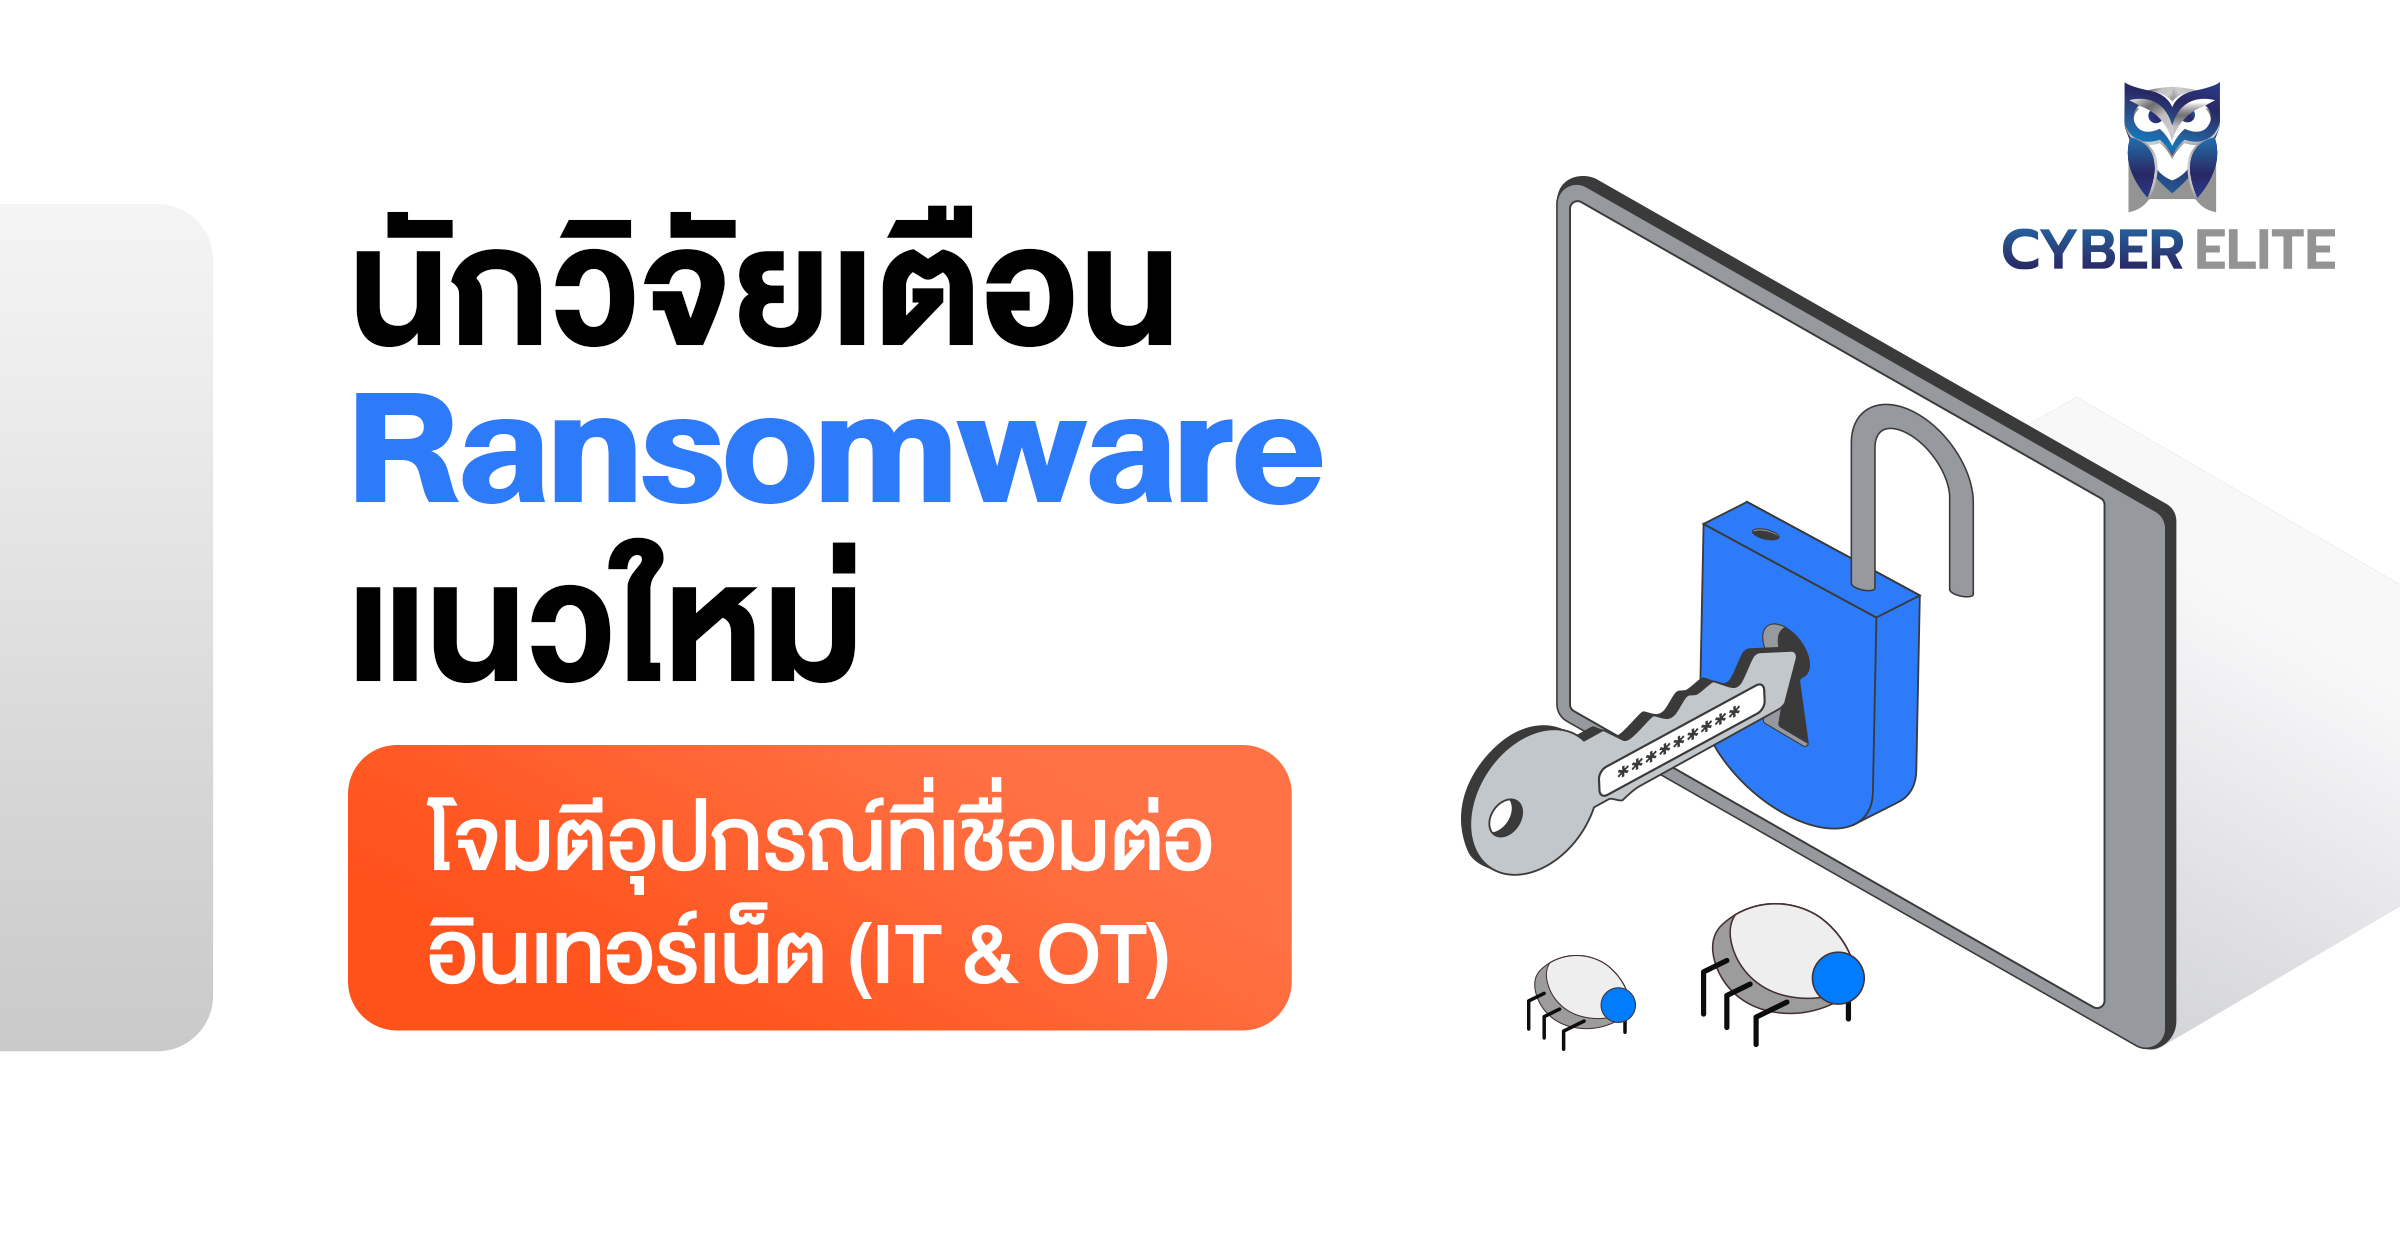 นักวิจัยเตือน ransomware แนวใหม่โจมตีอุปกรณ์ที่เชื่อมต่ออินเทอร์เน็ต (IT & OT)